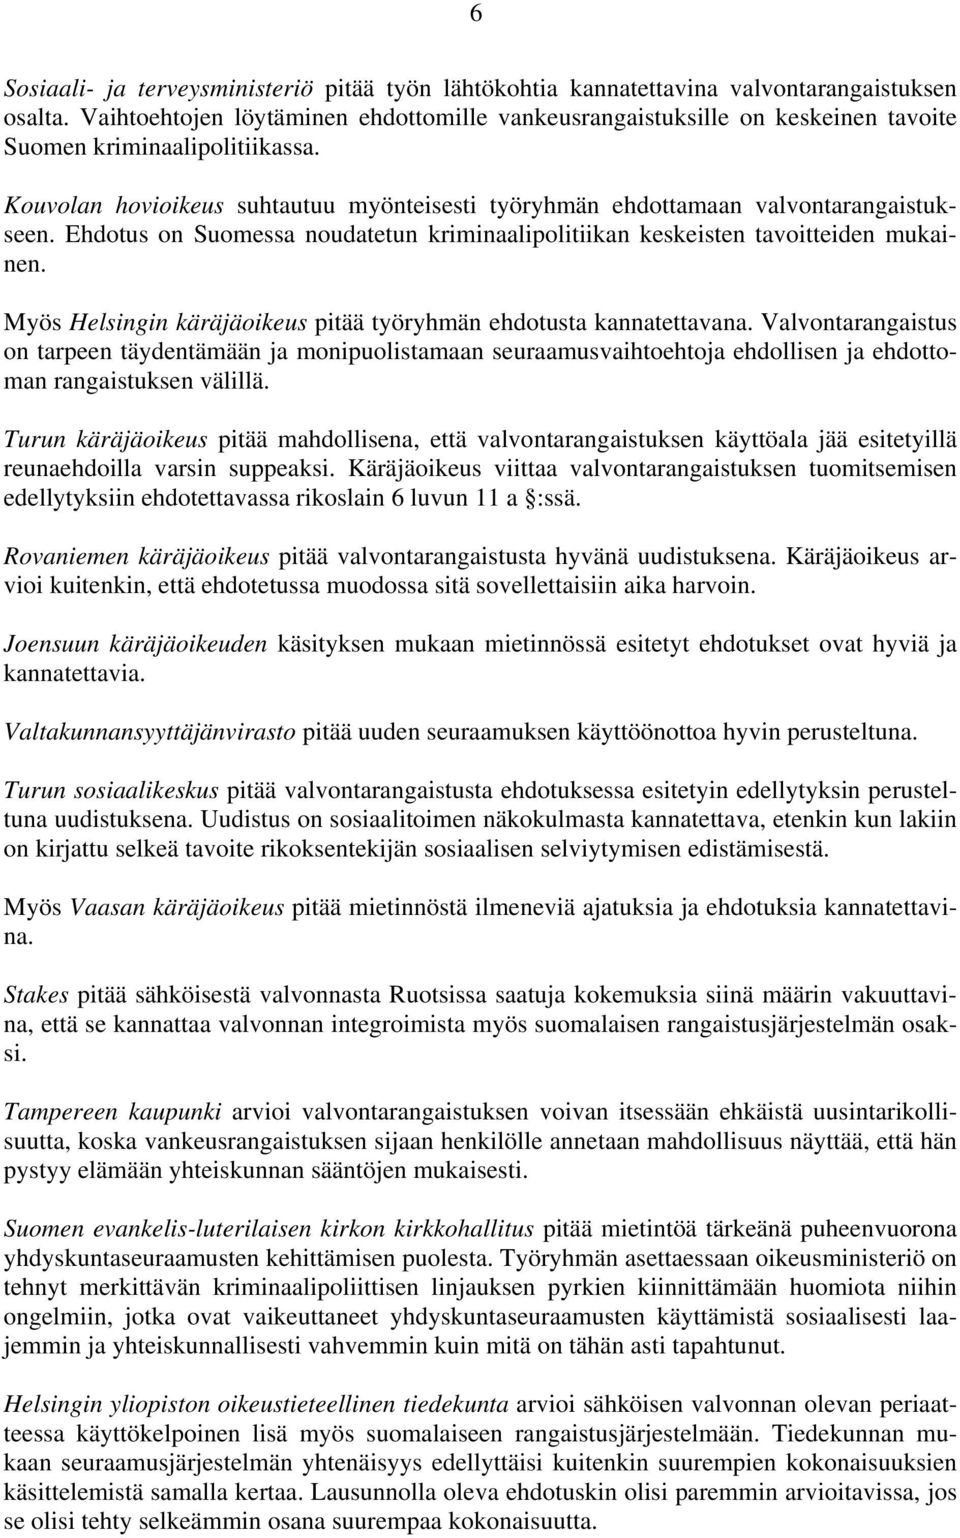 Kouvolan hovioikeus suhtautuu myönteisesti työryhmän ehdottamaan valvontarangaistukseen. Ehdotus on Suomessa noudatetun kriminaalipolitiikan keskeisten tavoitteiden mukainen.